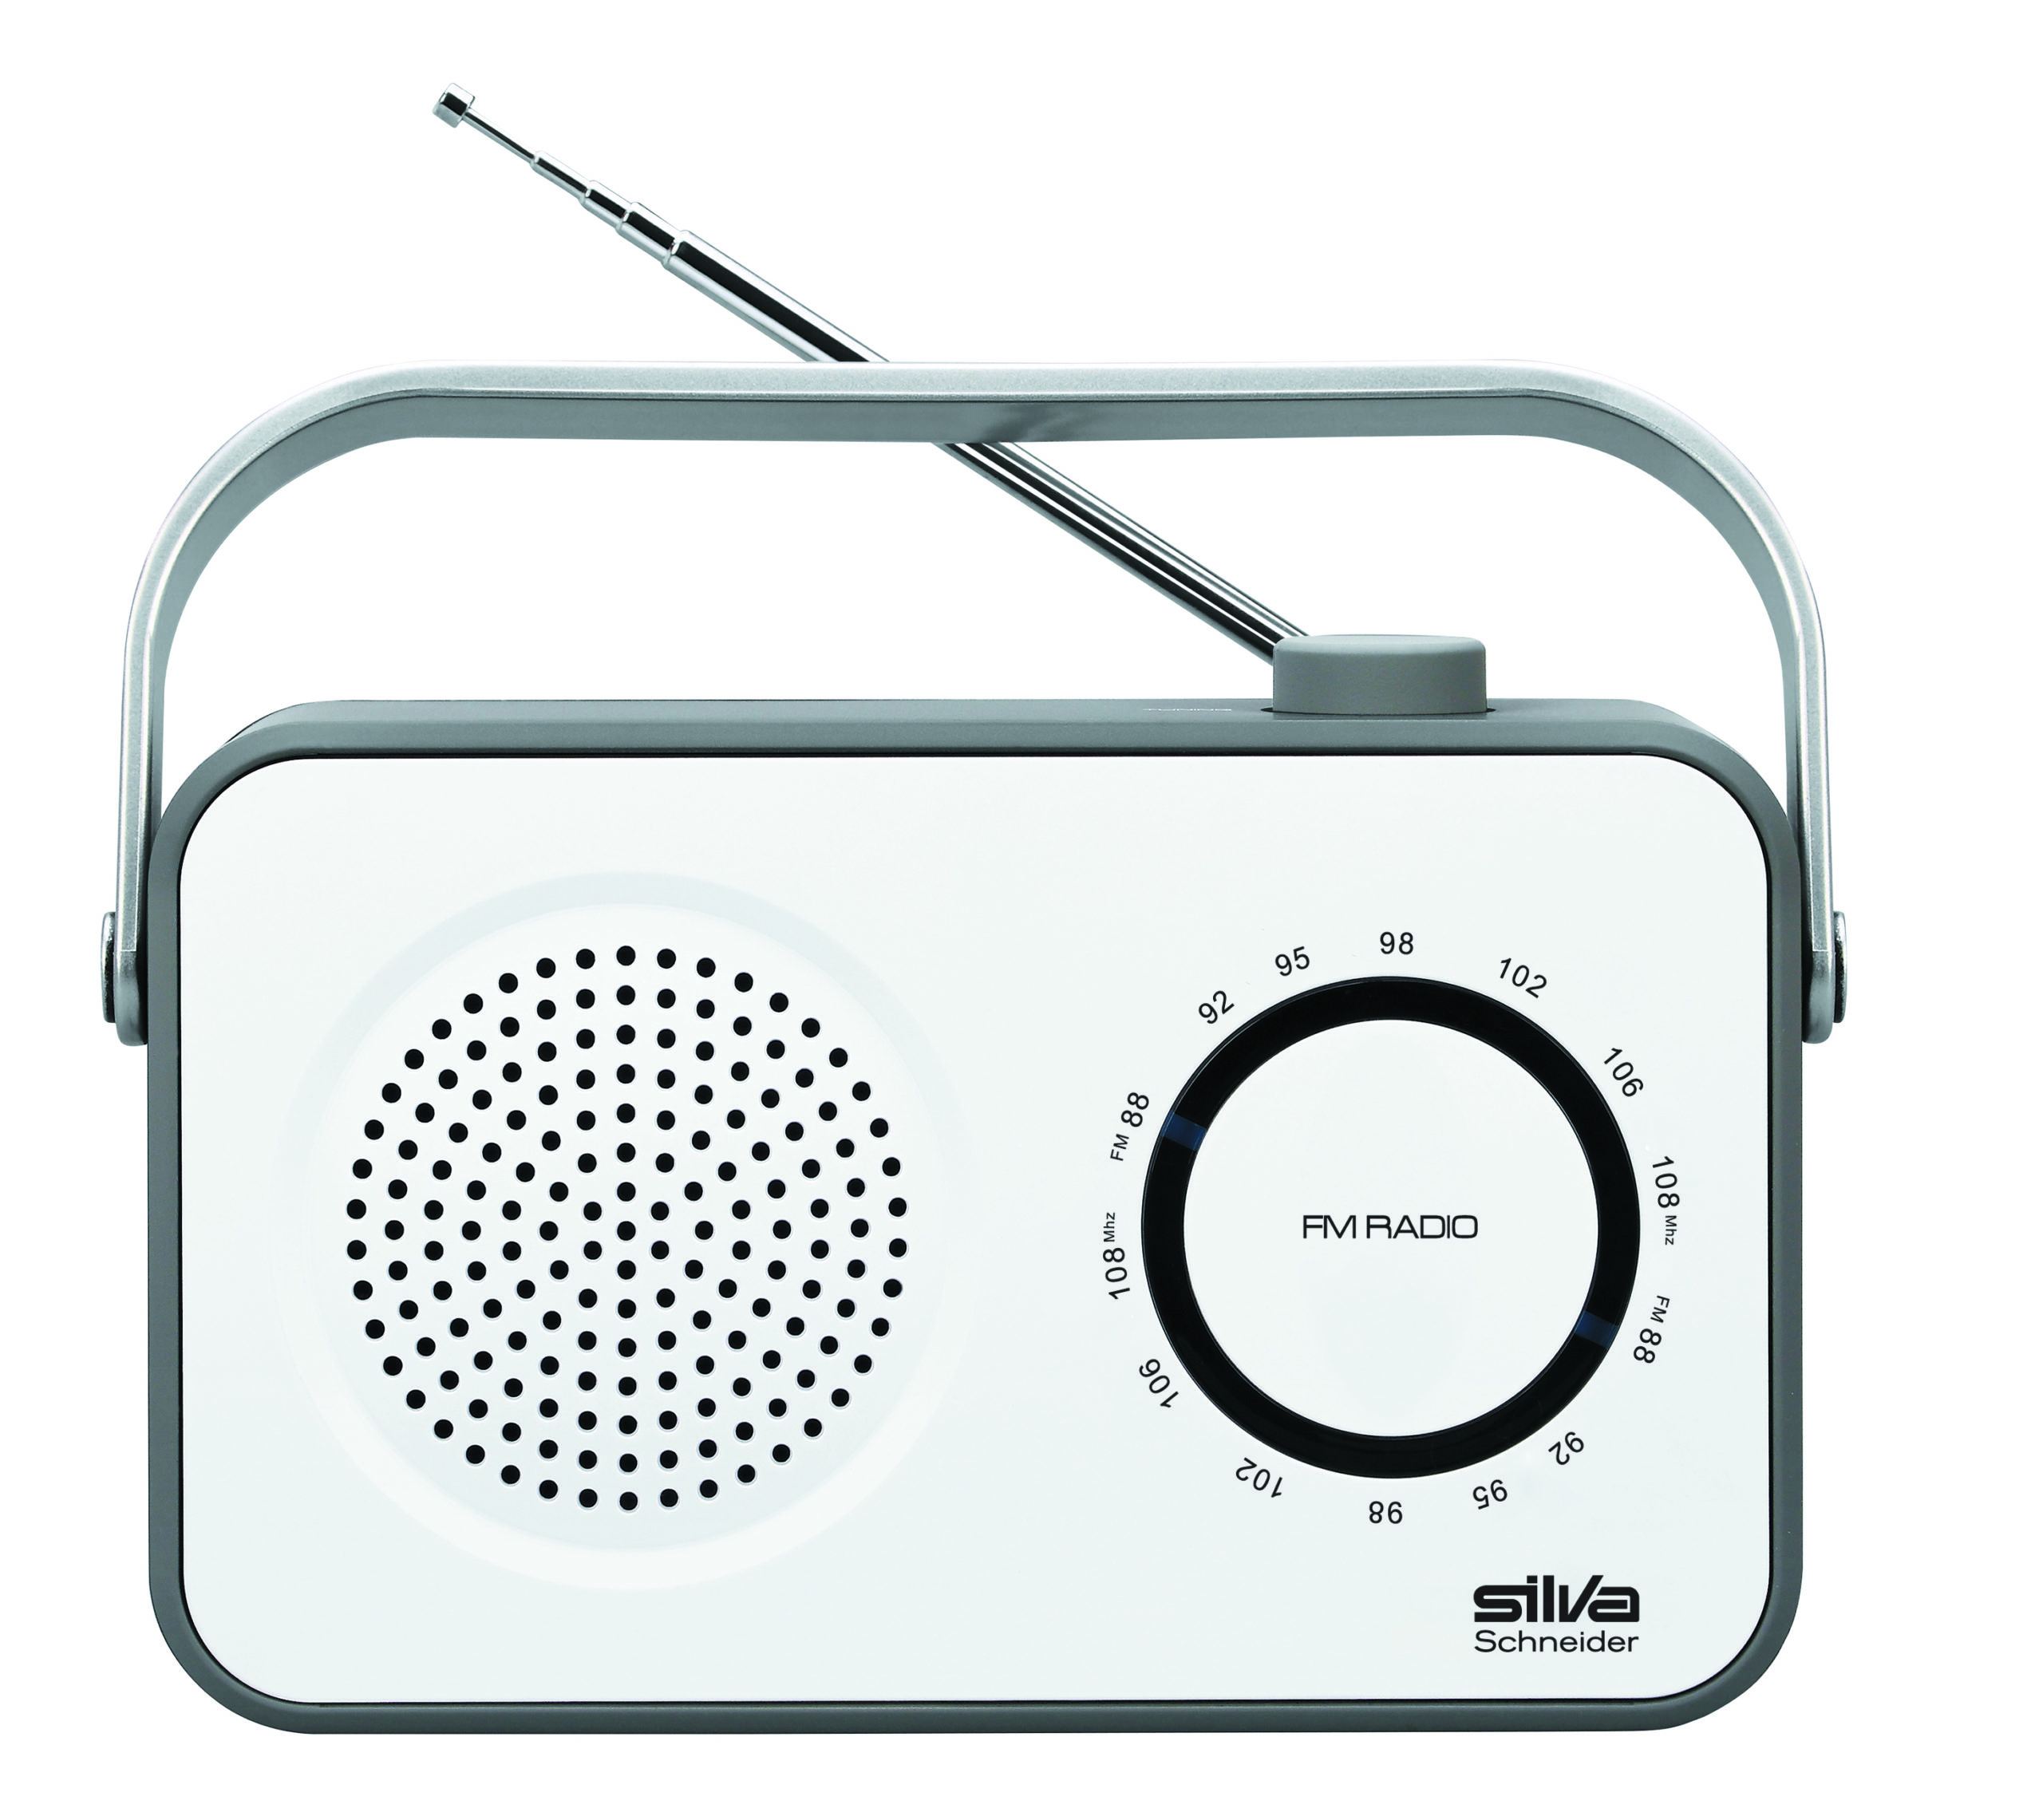 SILVA-SCHNEIDER M 295 weiß/grau FM, Radio